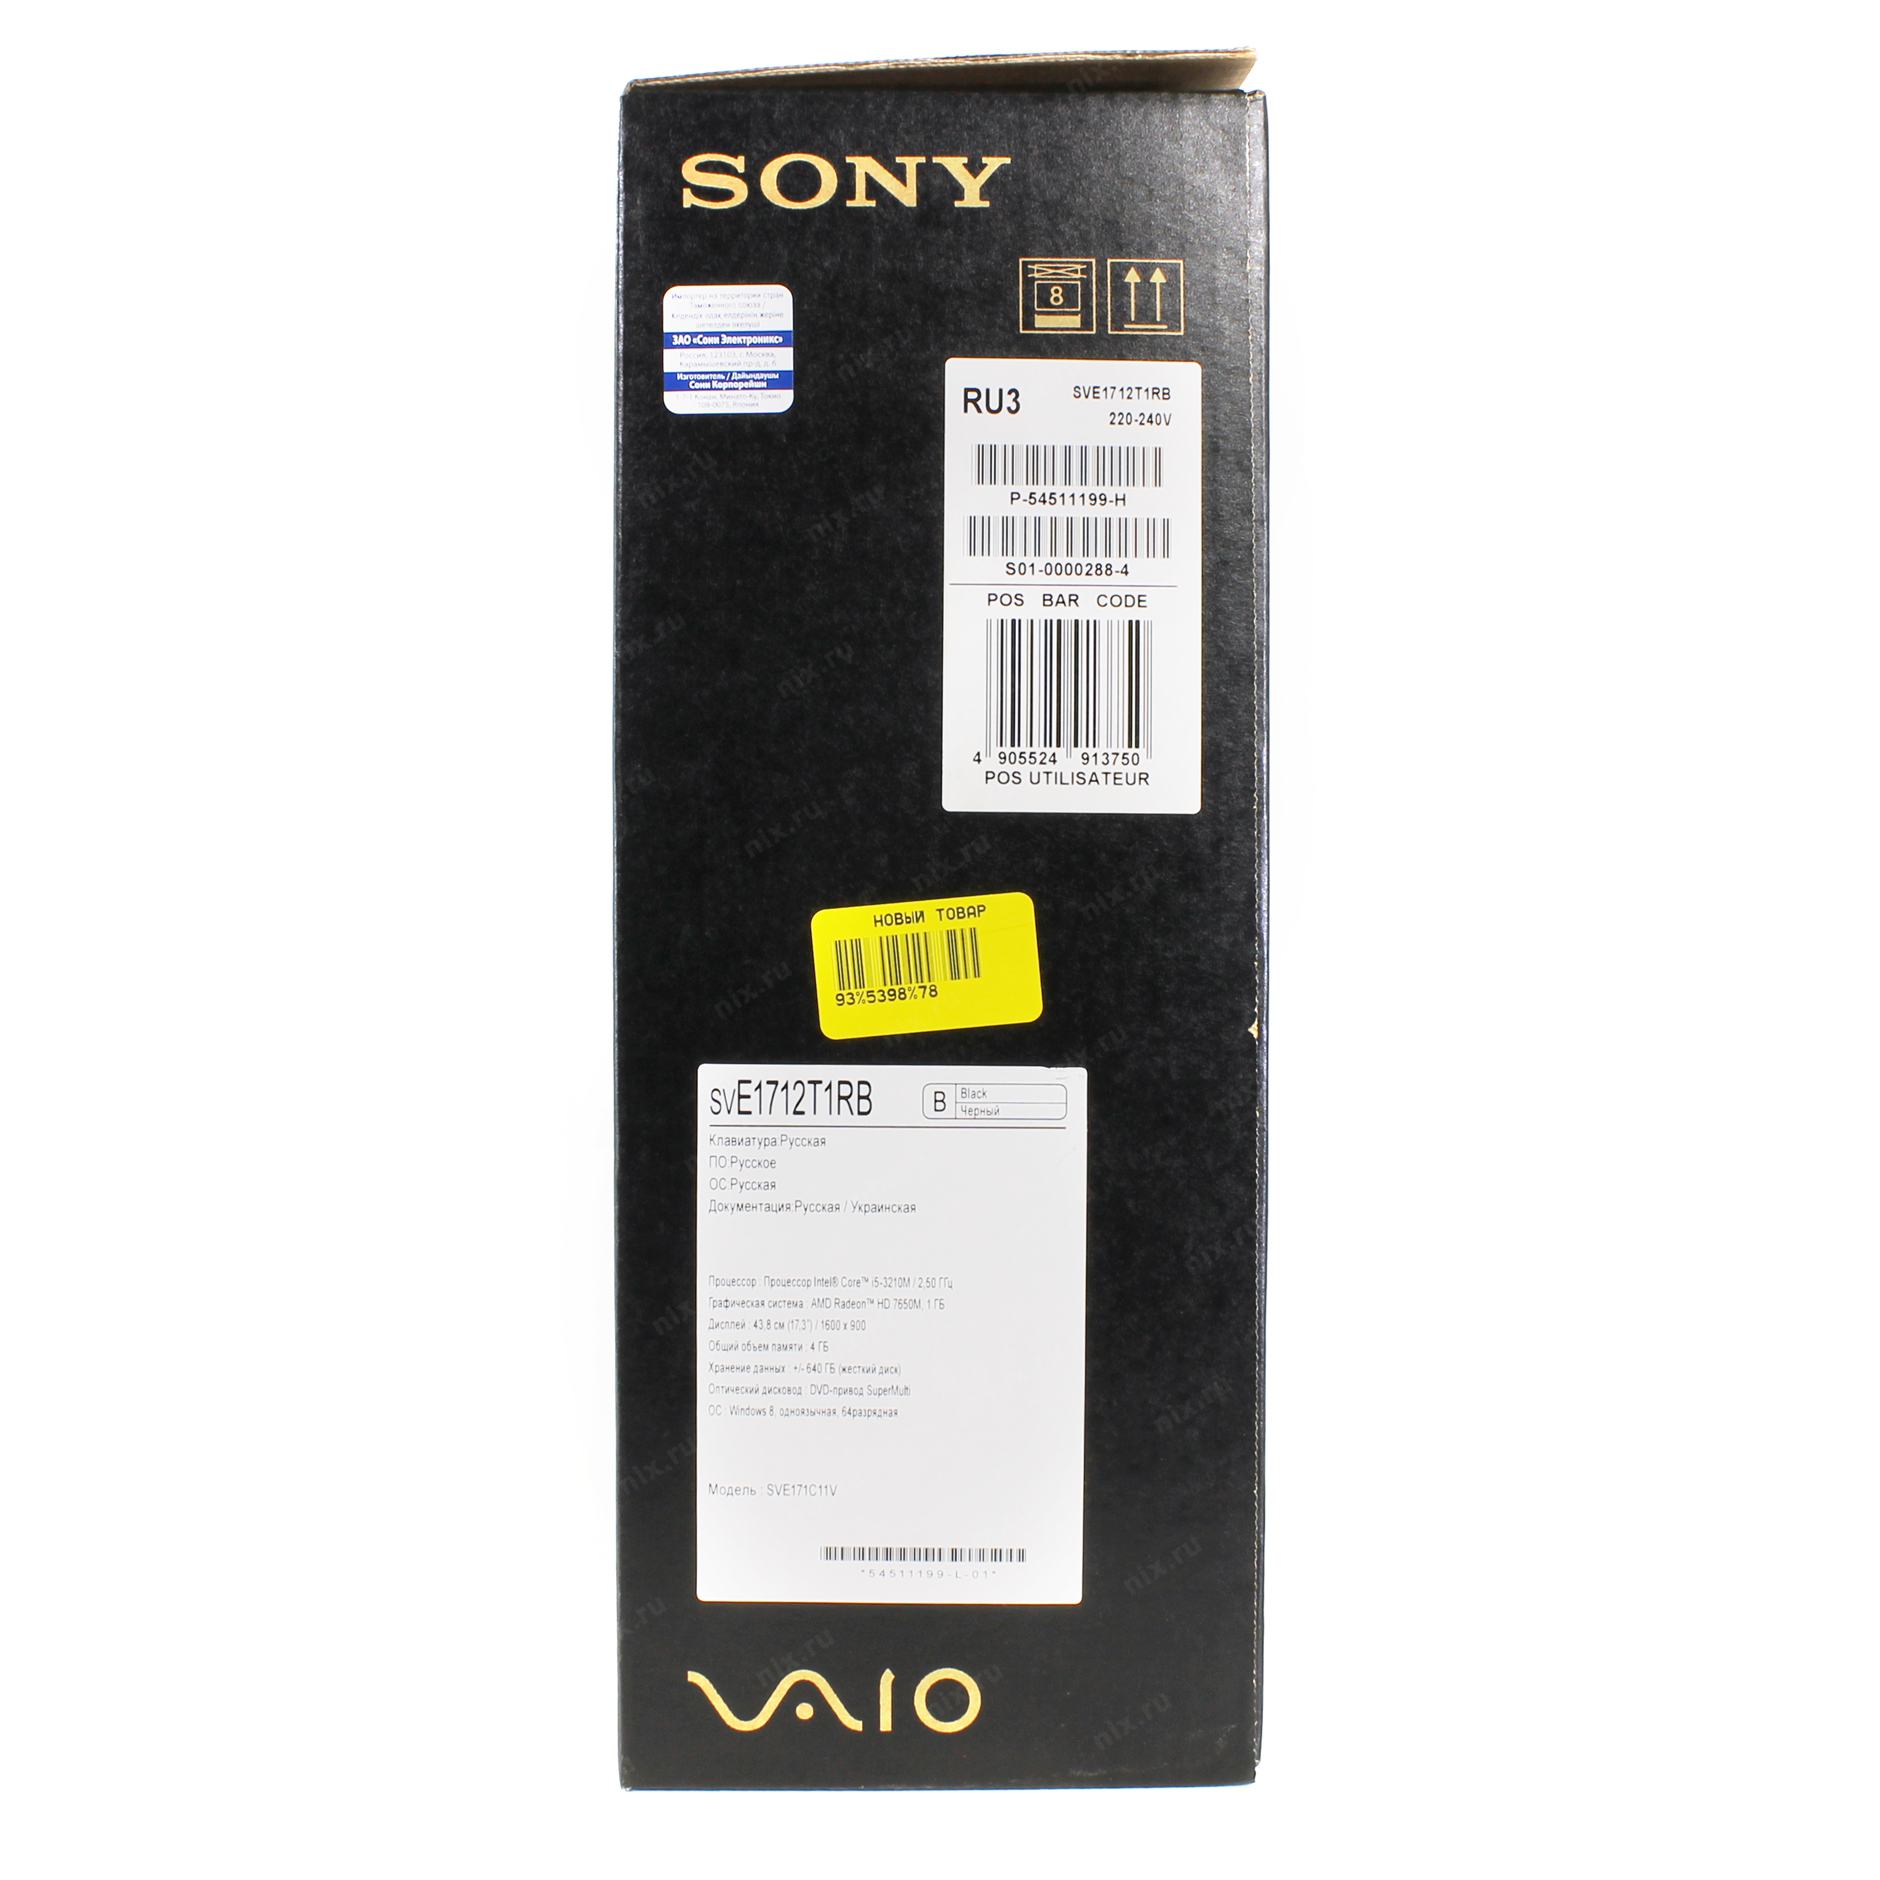 Ноутбук Sony Sve 1712v1r B Black Купить